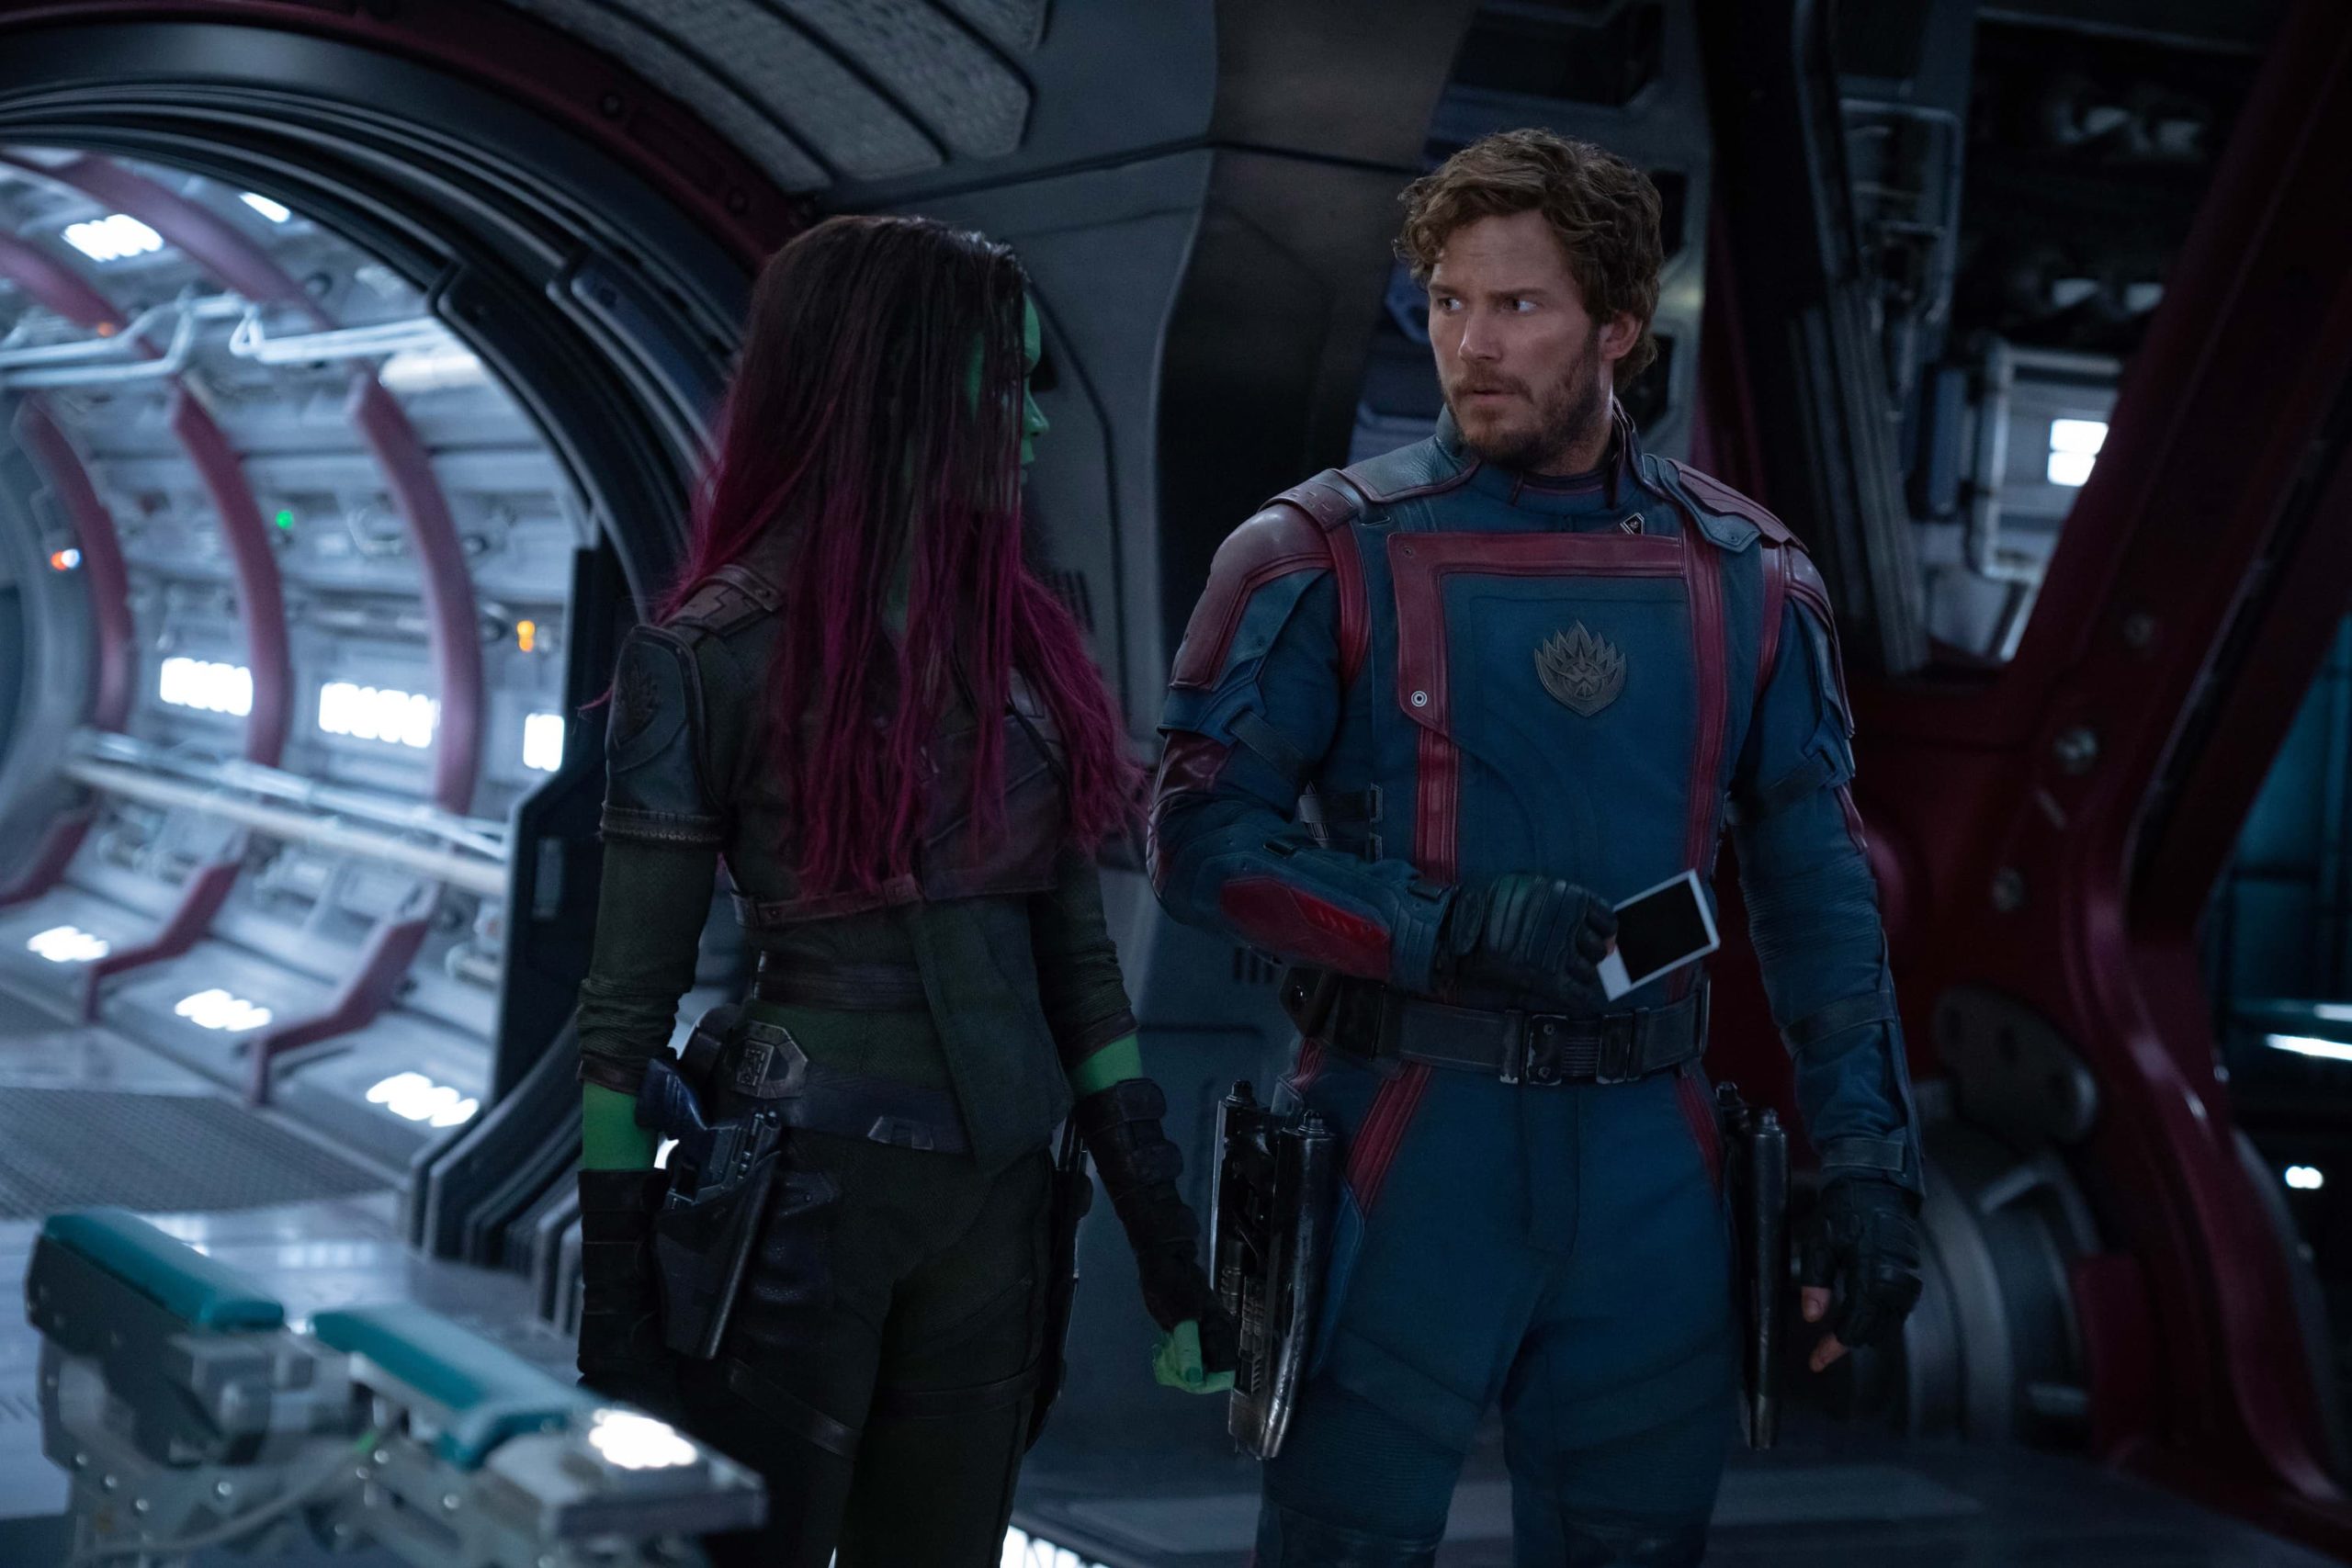 Gamora meets her former boyfriend